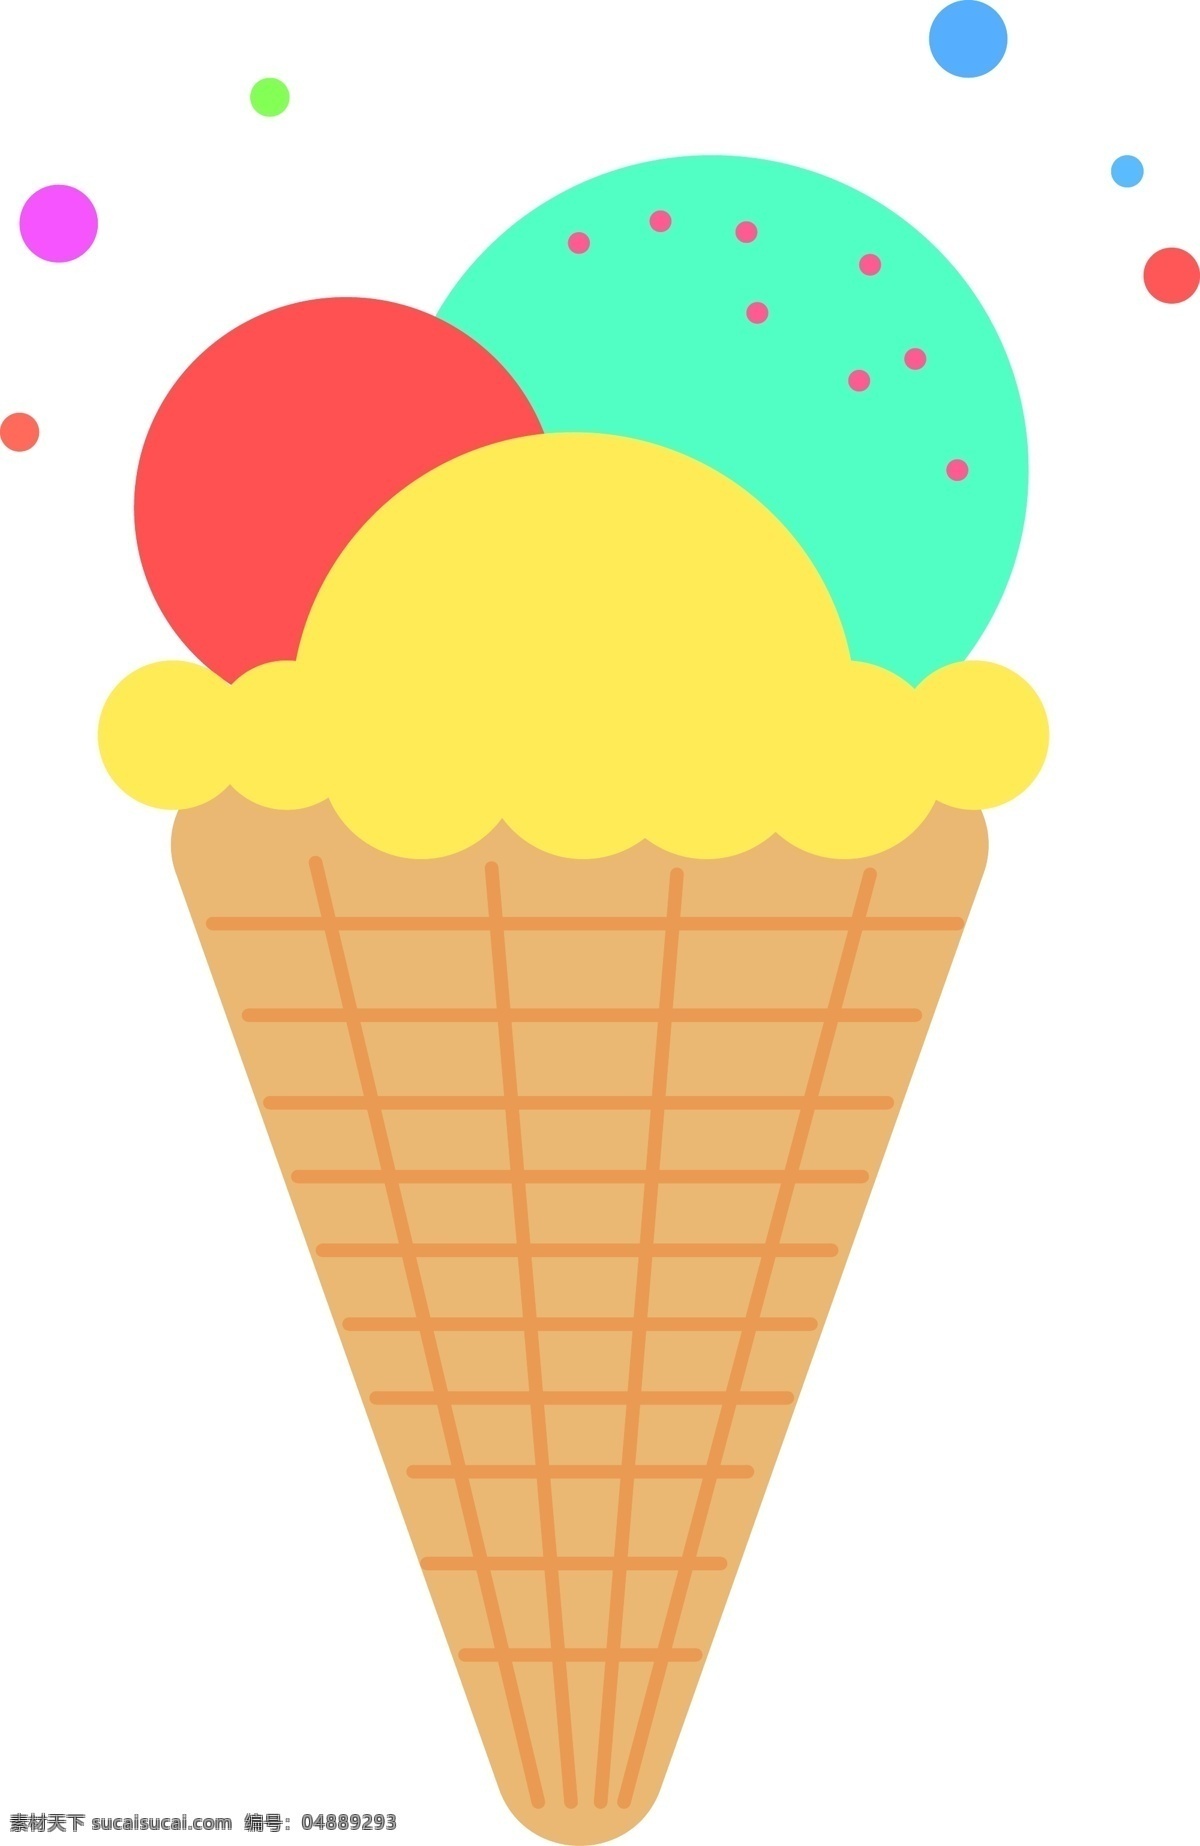 原创 甜品 冰淇淋 矢量 插画 图 元素 插图素材 冰淇淋插图 冰淇淋素材 美食插图 矢量插图